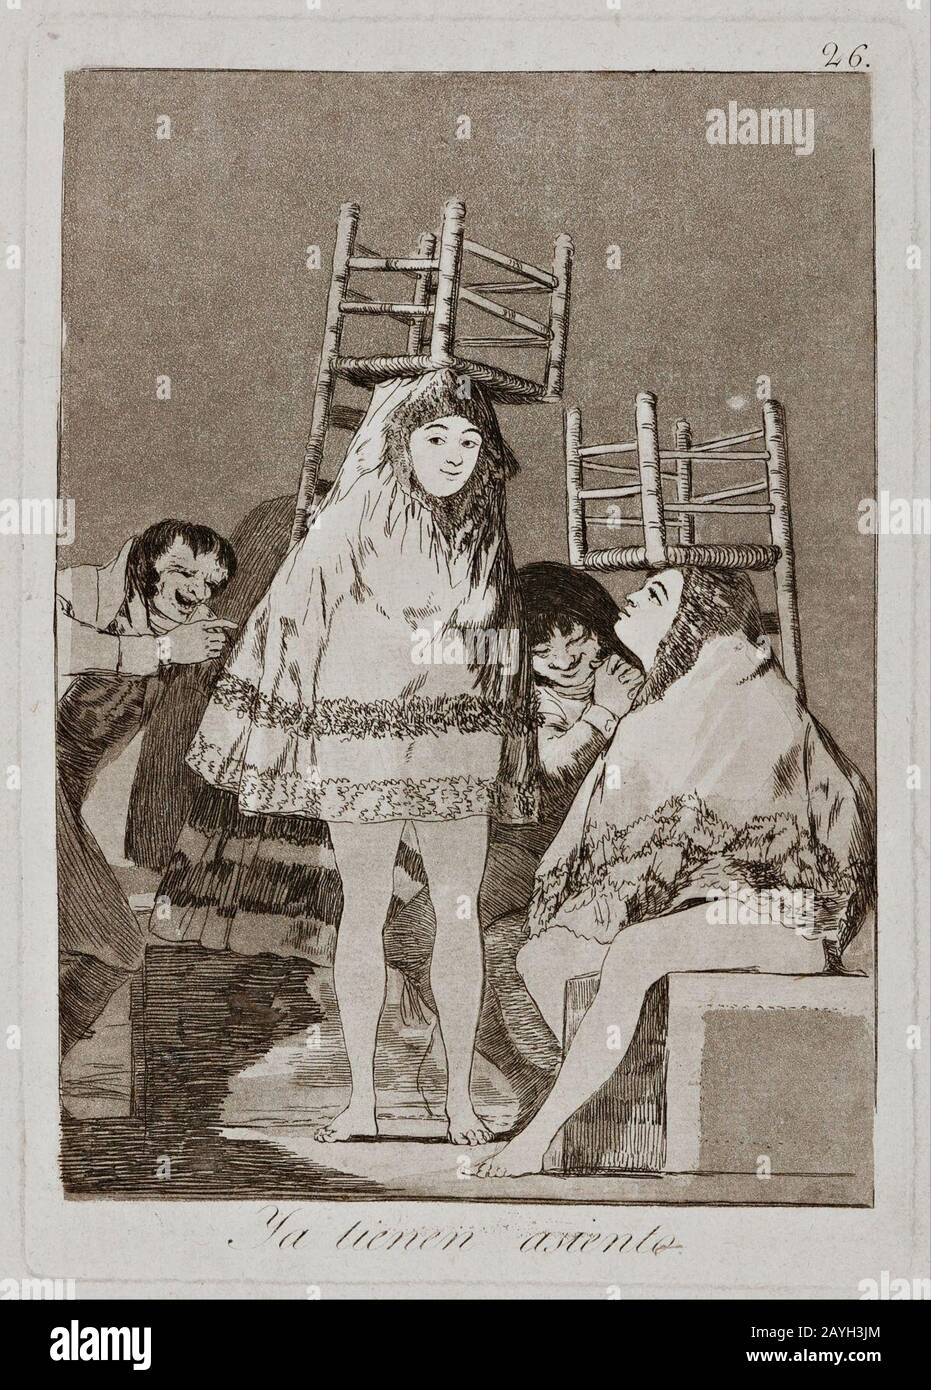 Francisco Goya - Sie haben bereits einen Sitz - Platte 26 aus der Serie "Los Caprichos" (The Caprices) Stockfoto